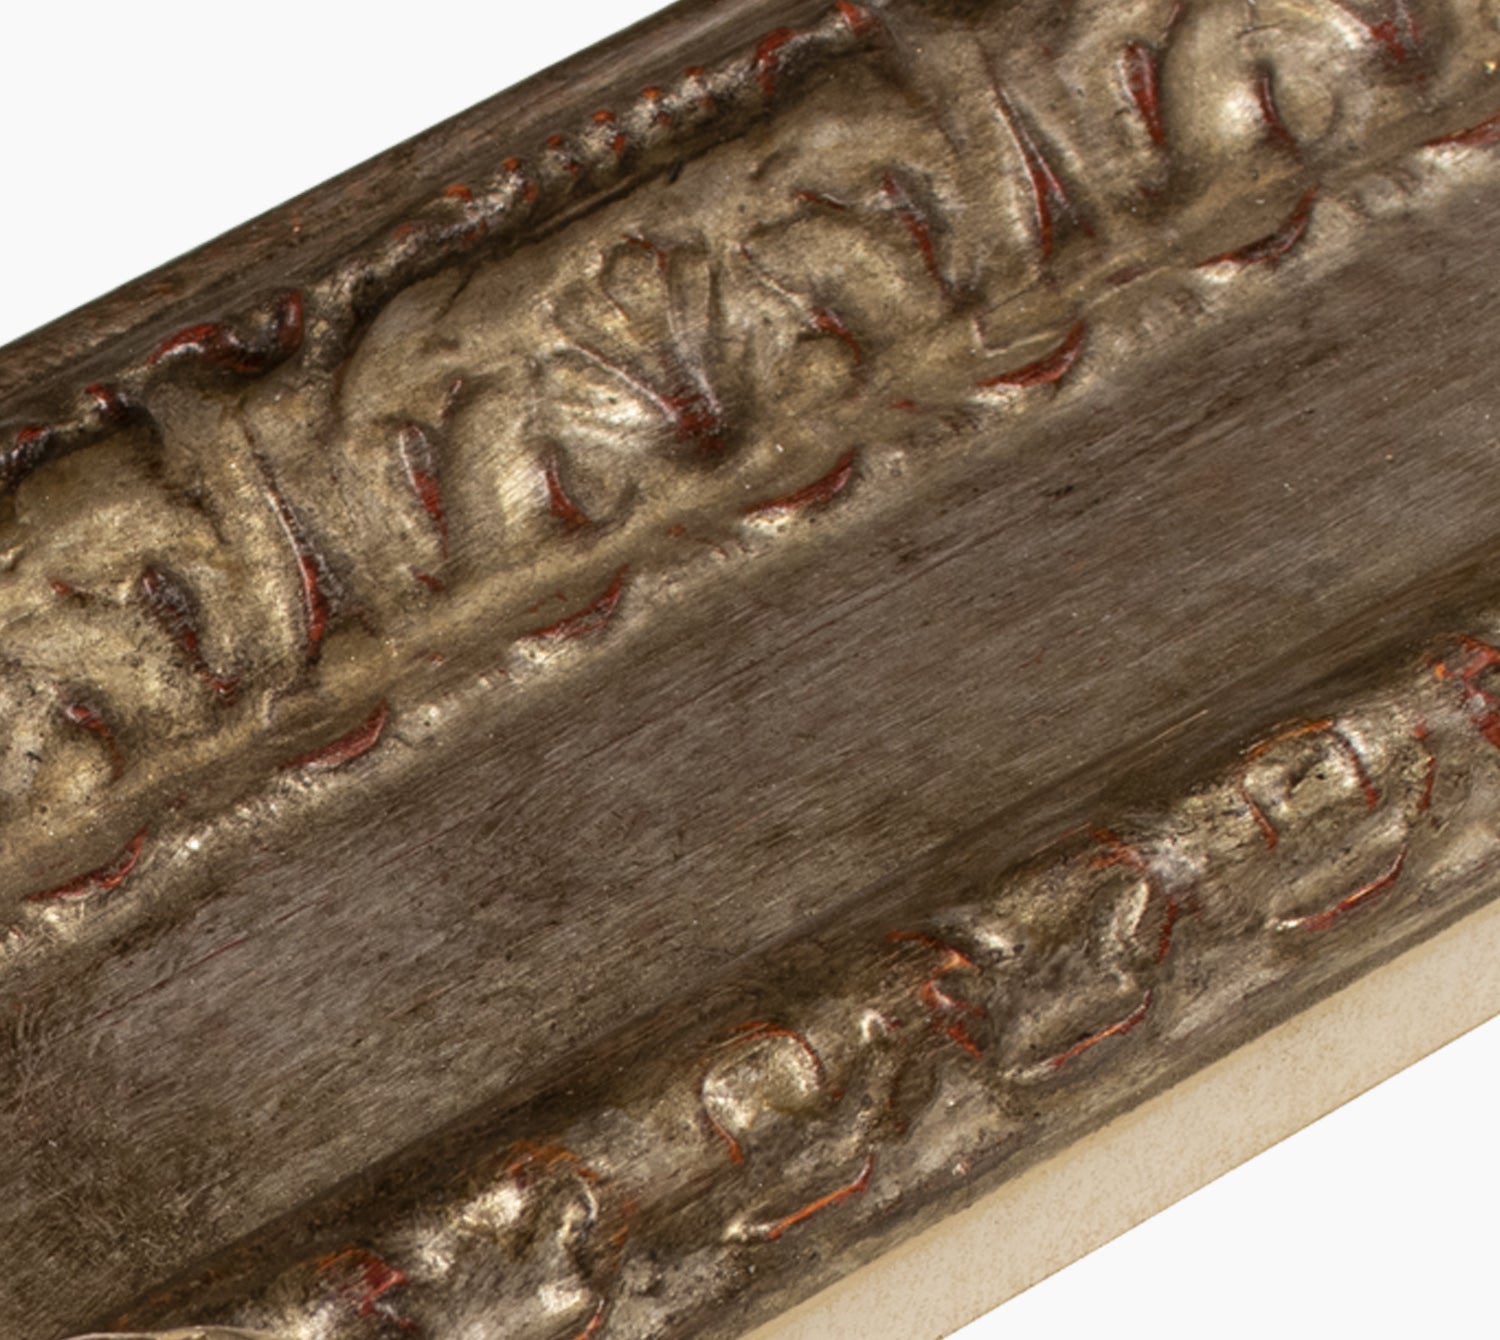 743.231 cadre en bois à la feuille d'argent antique mesure de profil 100x53 mm Lombarda cornici S.n.c.